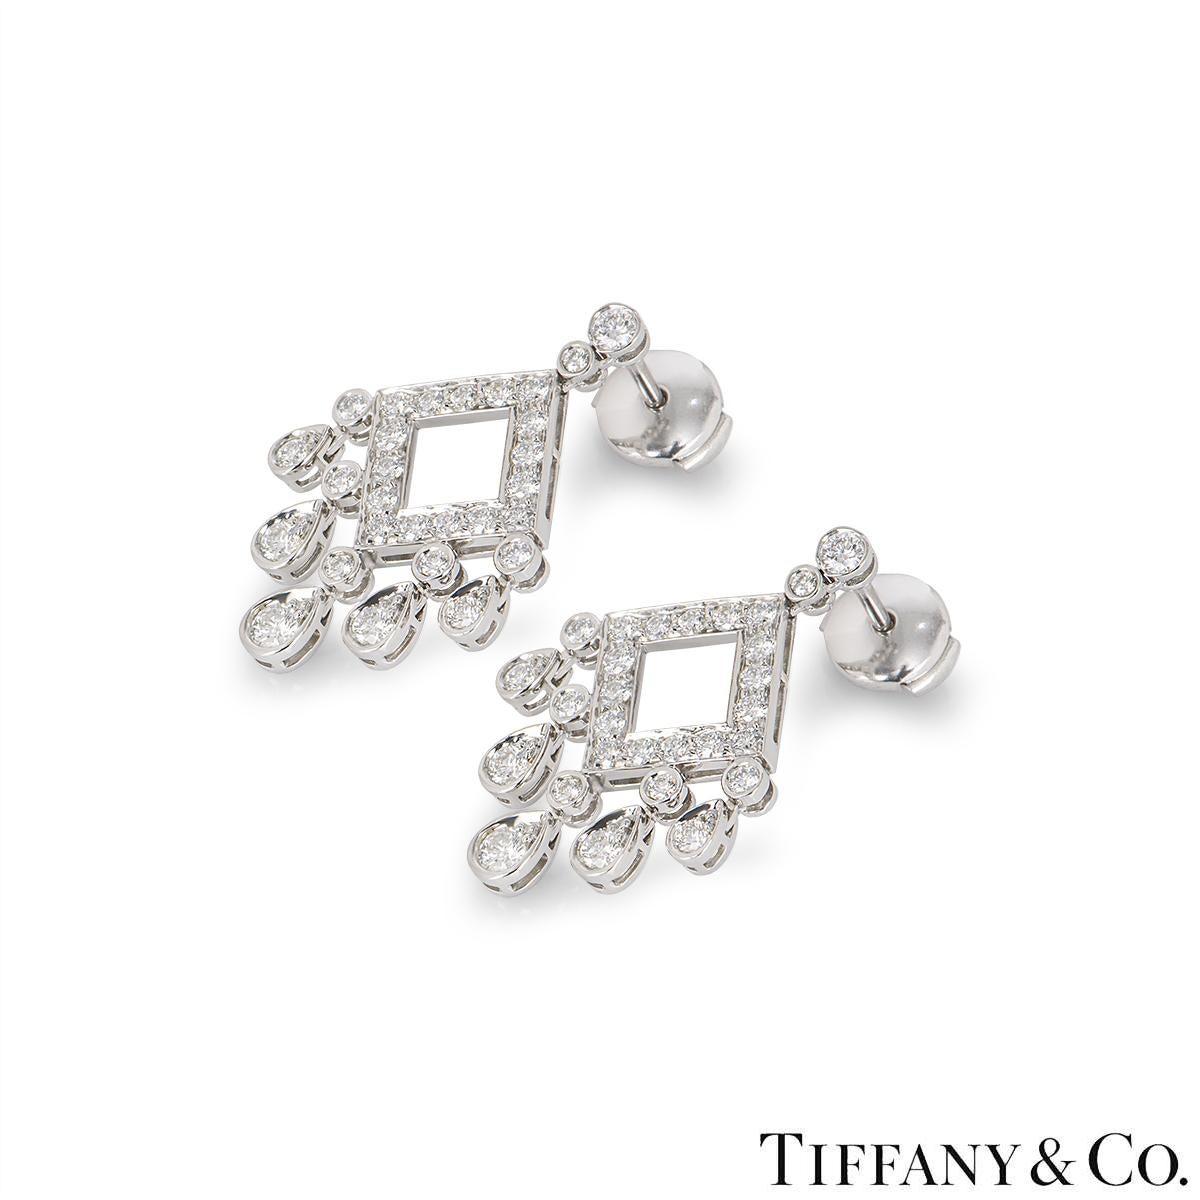 Ein wunderschönes Paar Platin-Diamanten-Kronleuchter-Ohrringe von Tiffany & Co. aus der Legacy-Kollektion. Die Ohrringe sind oben mit zwei abgestuften runden Diamanten im Brillantschliff besetzt, die zu einem durchbrochenen Kiefernmotiv führen, an